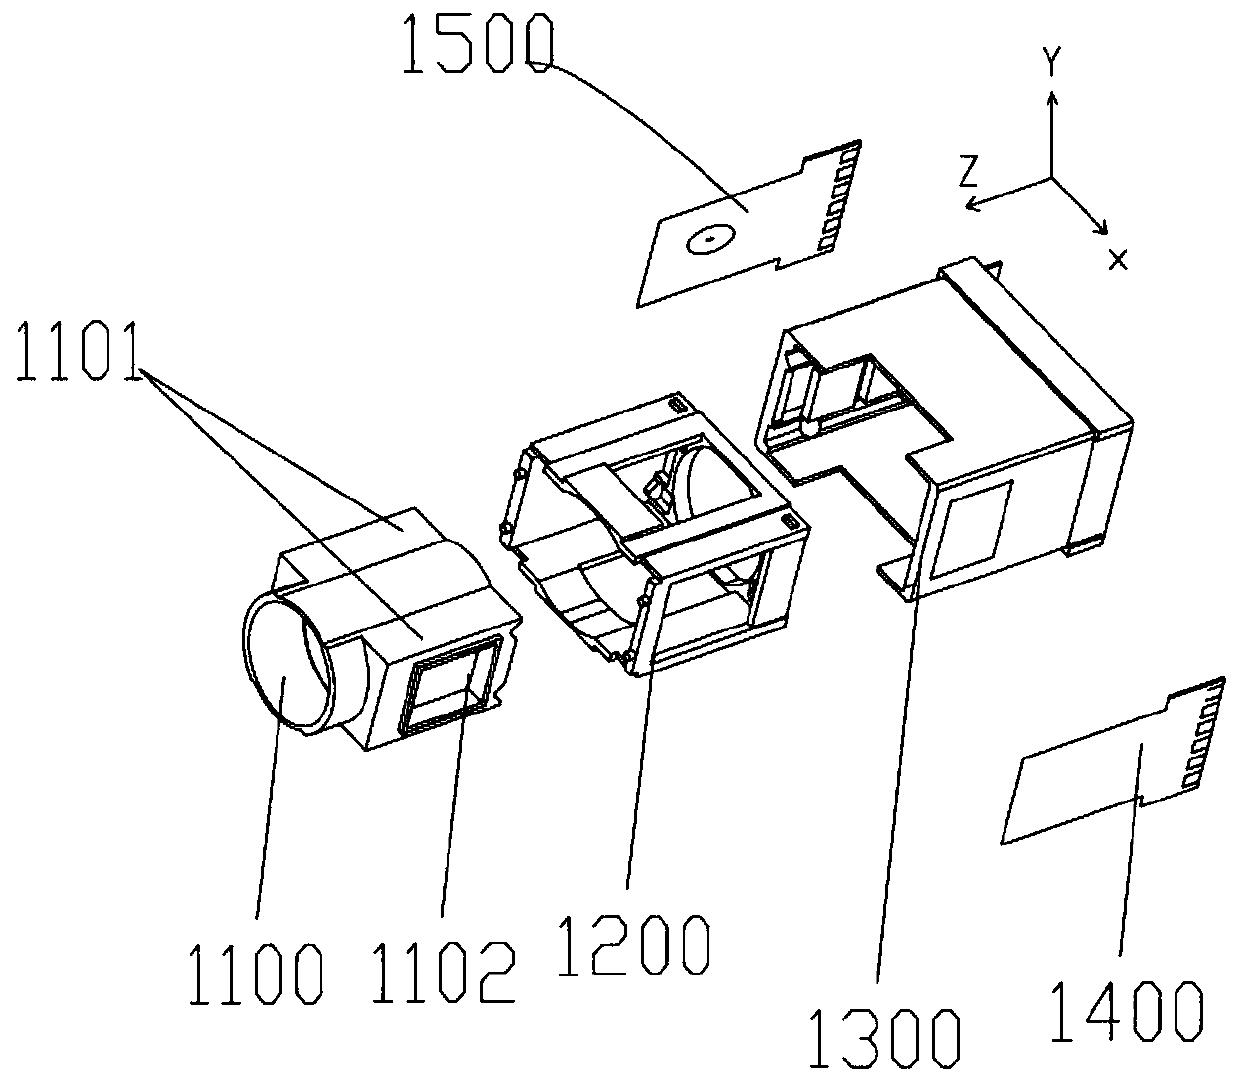 Periscope camera module